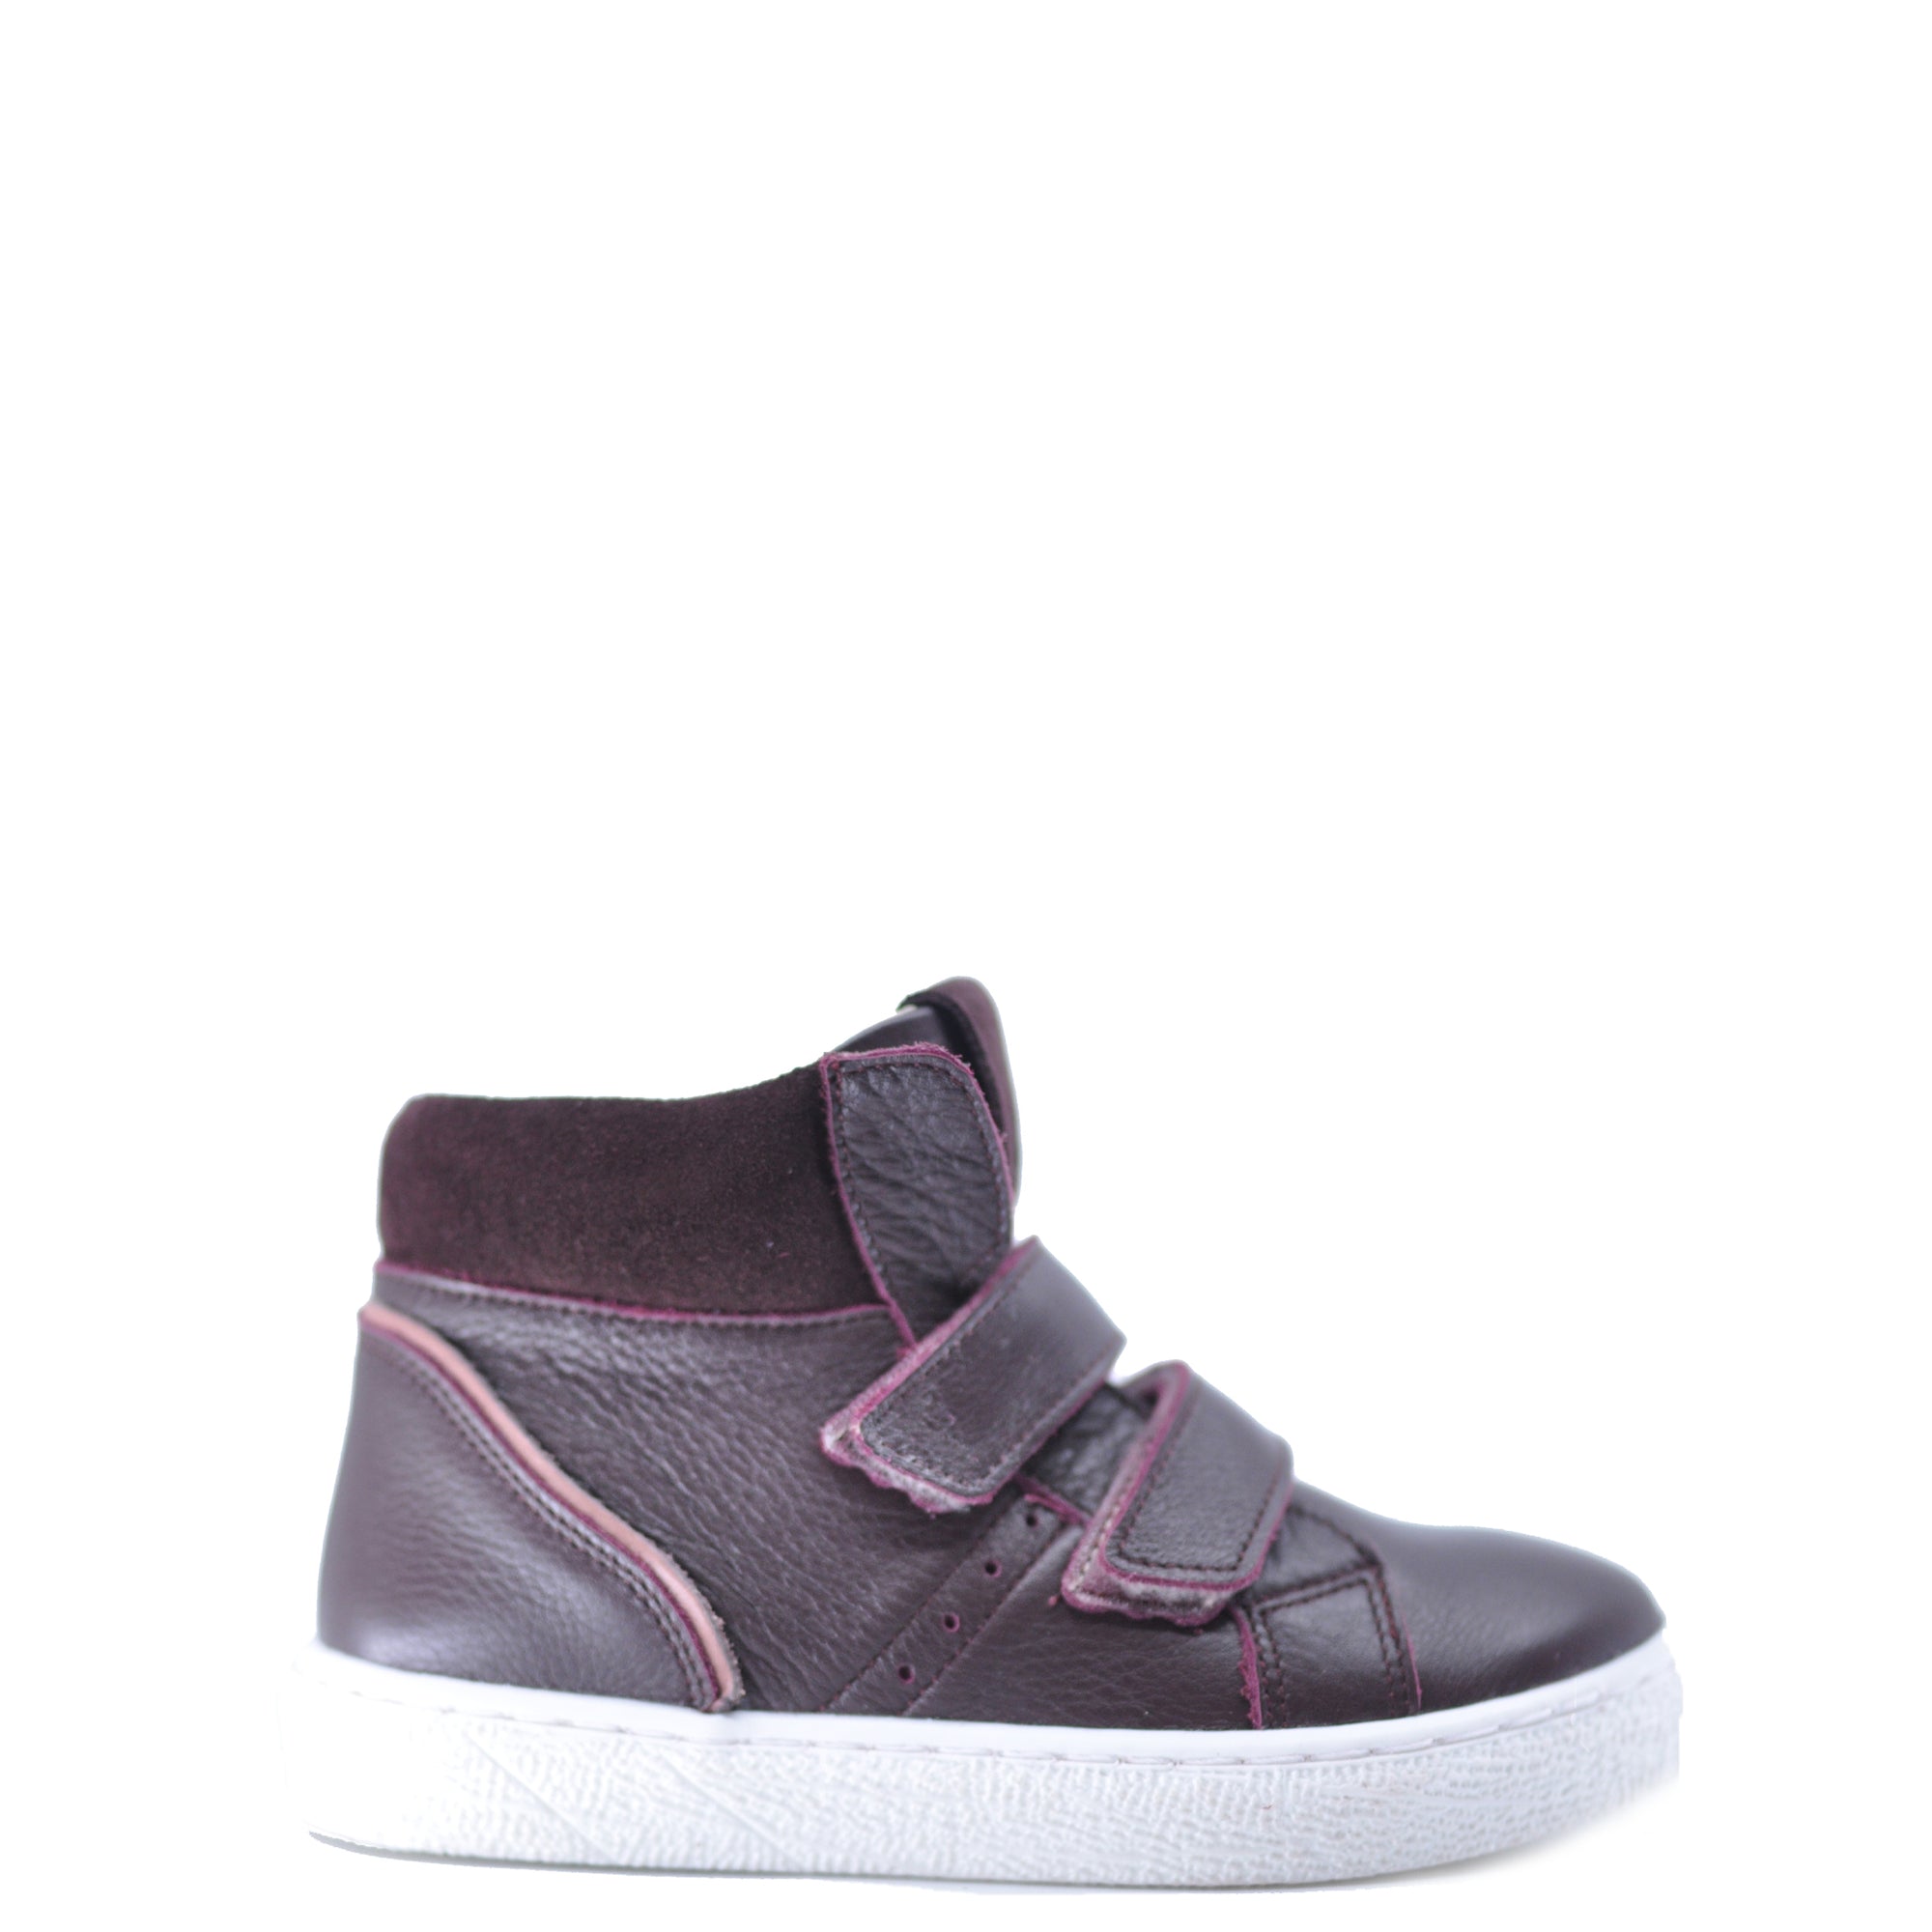 Emel Burgundy Velcro Baby Sneaker Sneaker-Tassel Children Shoes